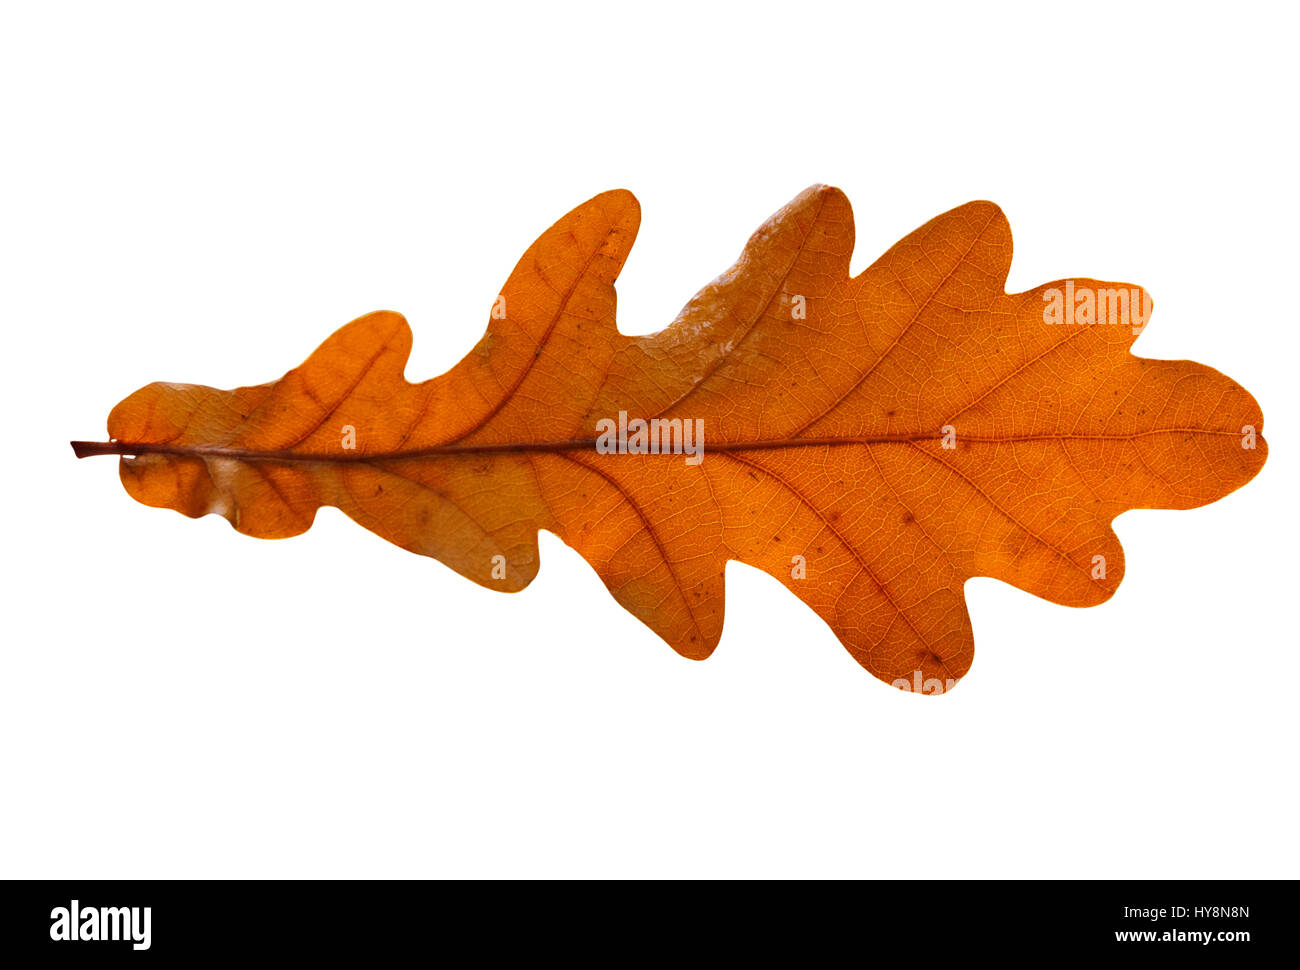 Oak leaf isolated on white background Stock Photo - Alamy